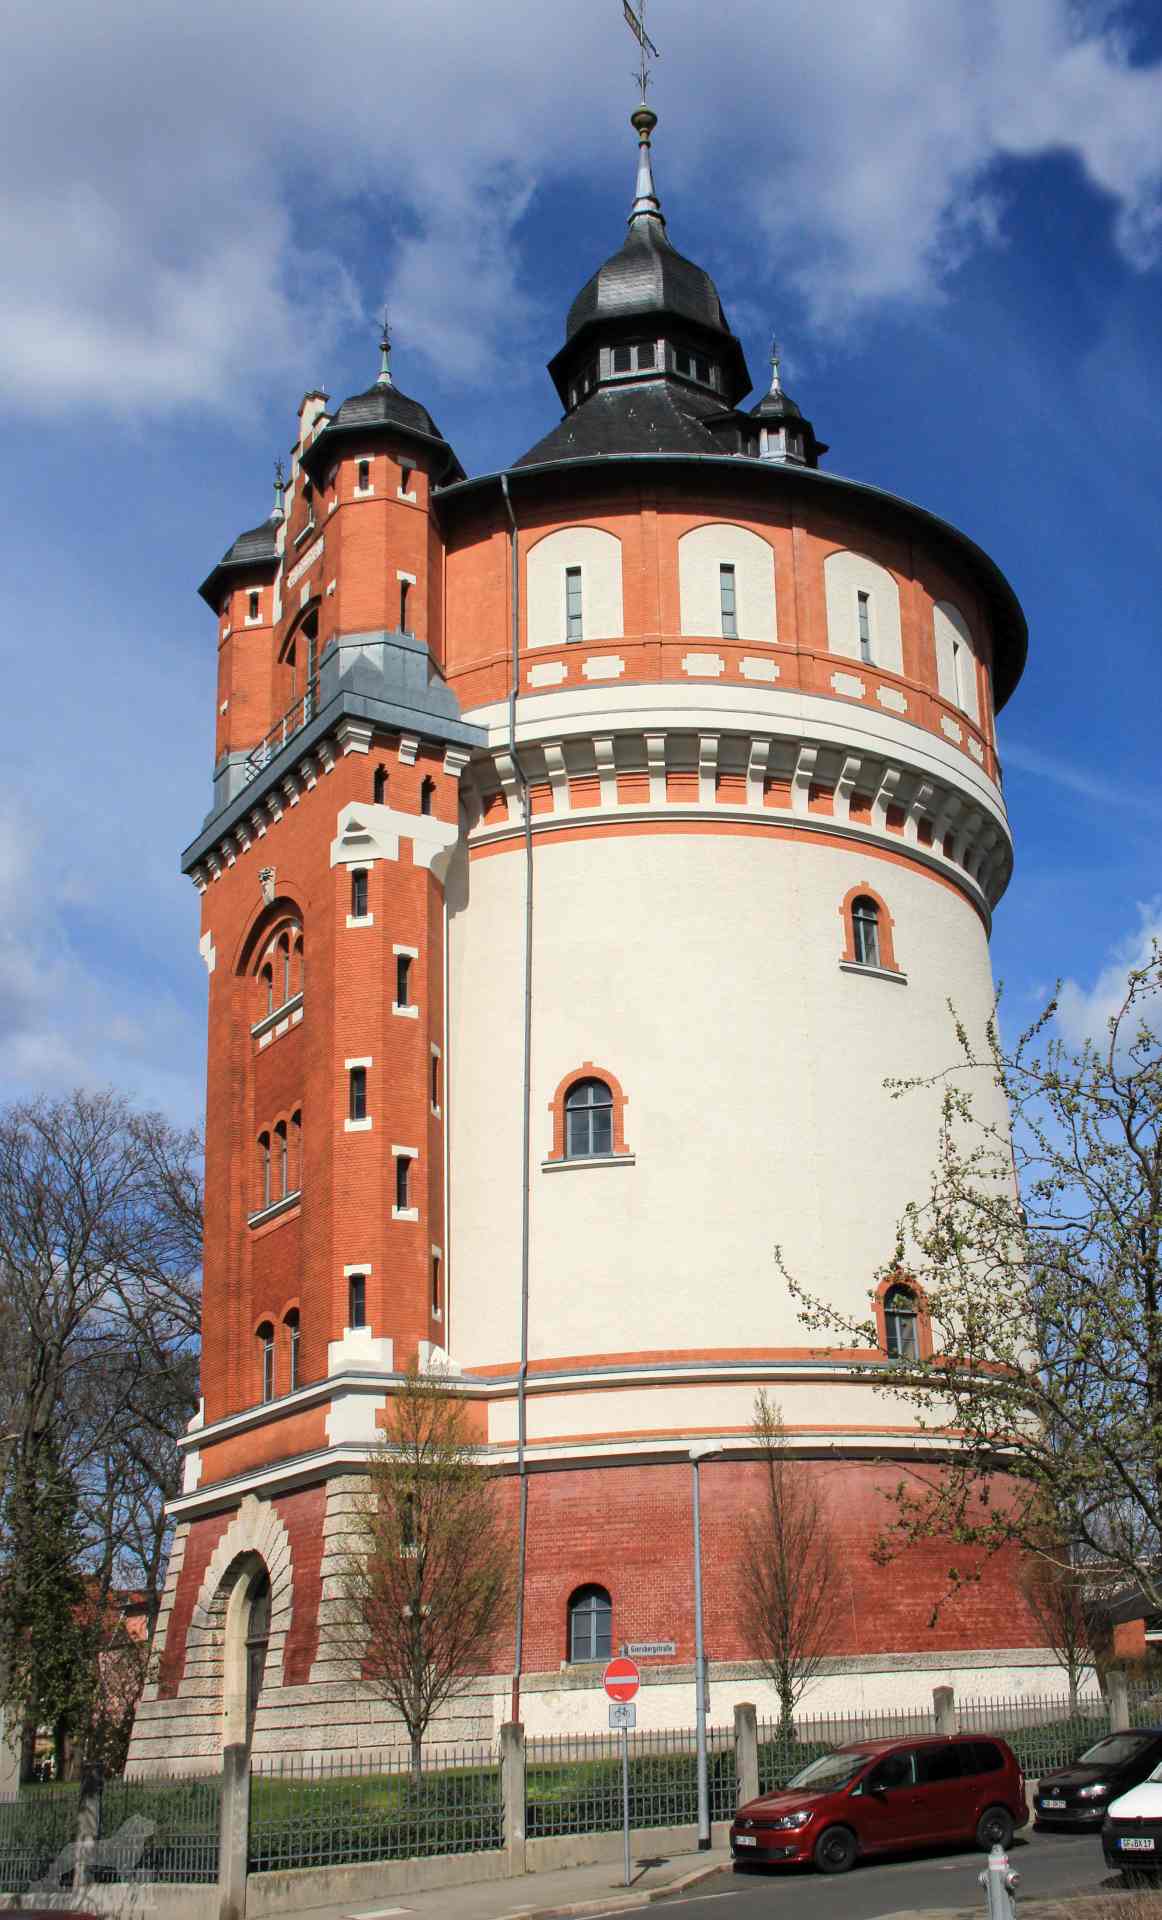 Wasserturm am Giersberg